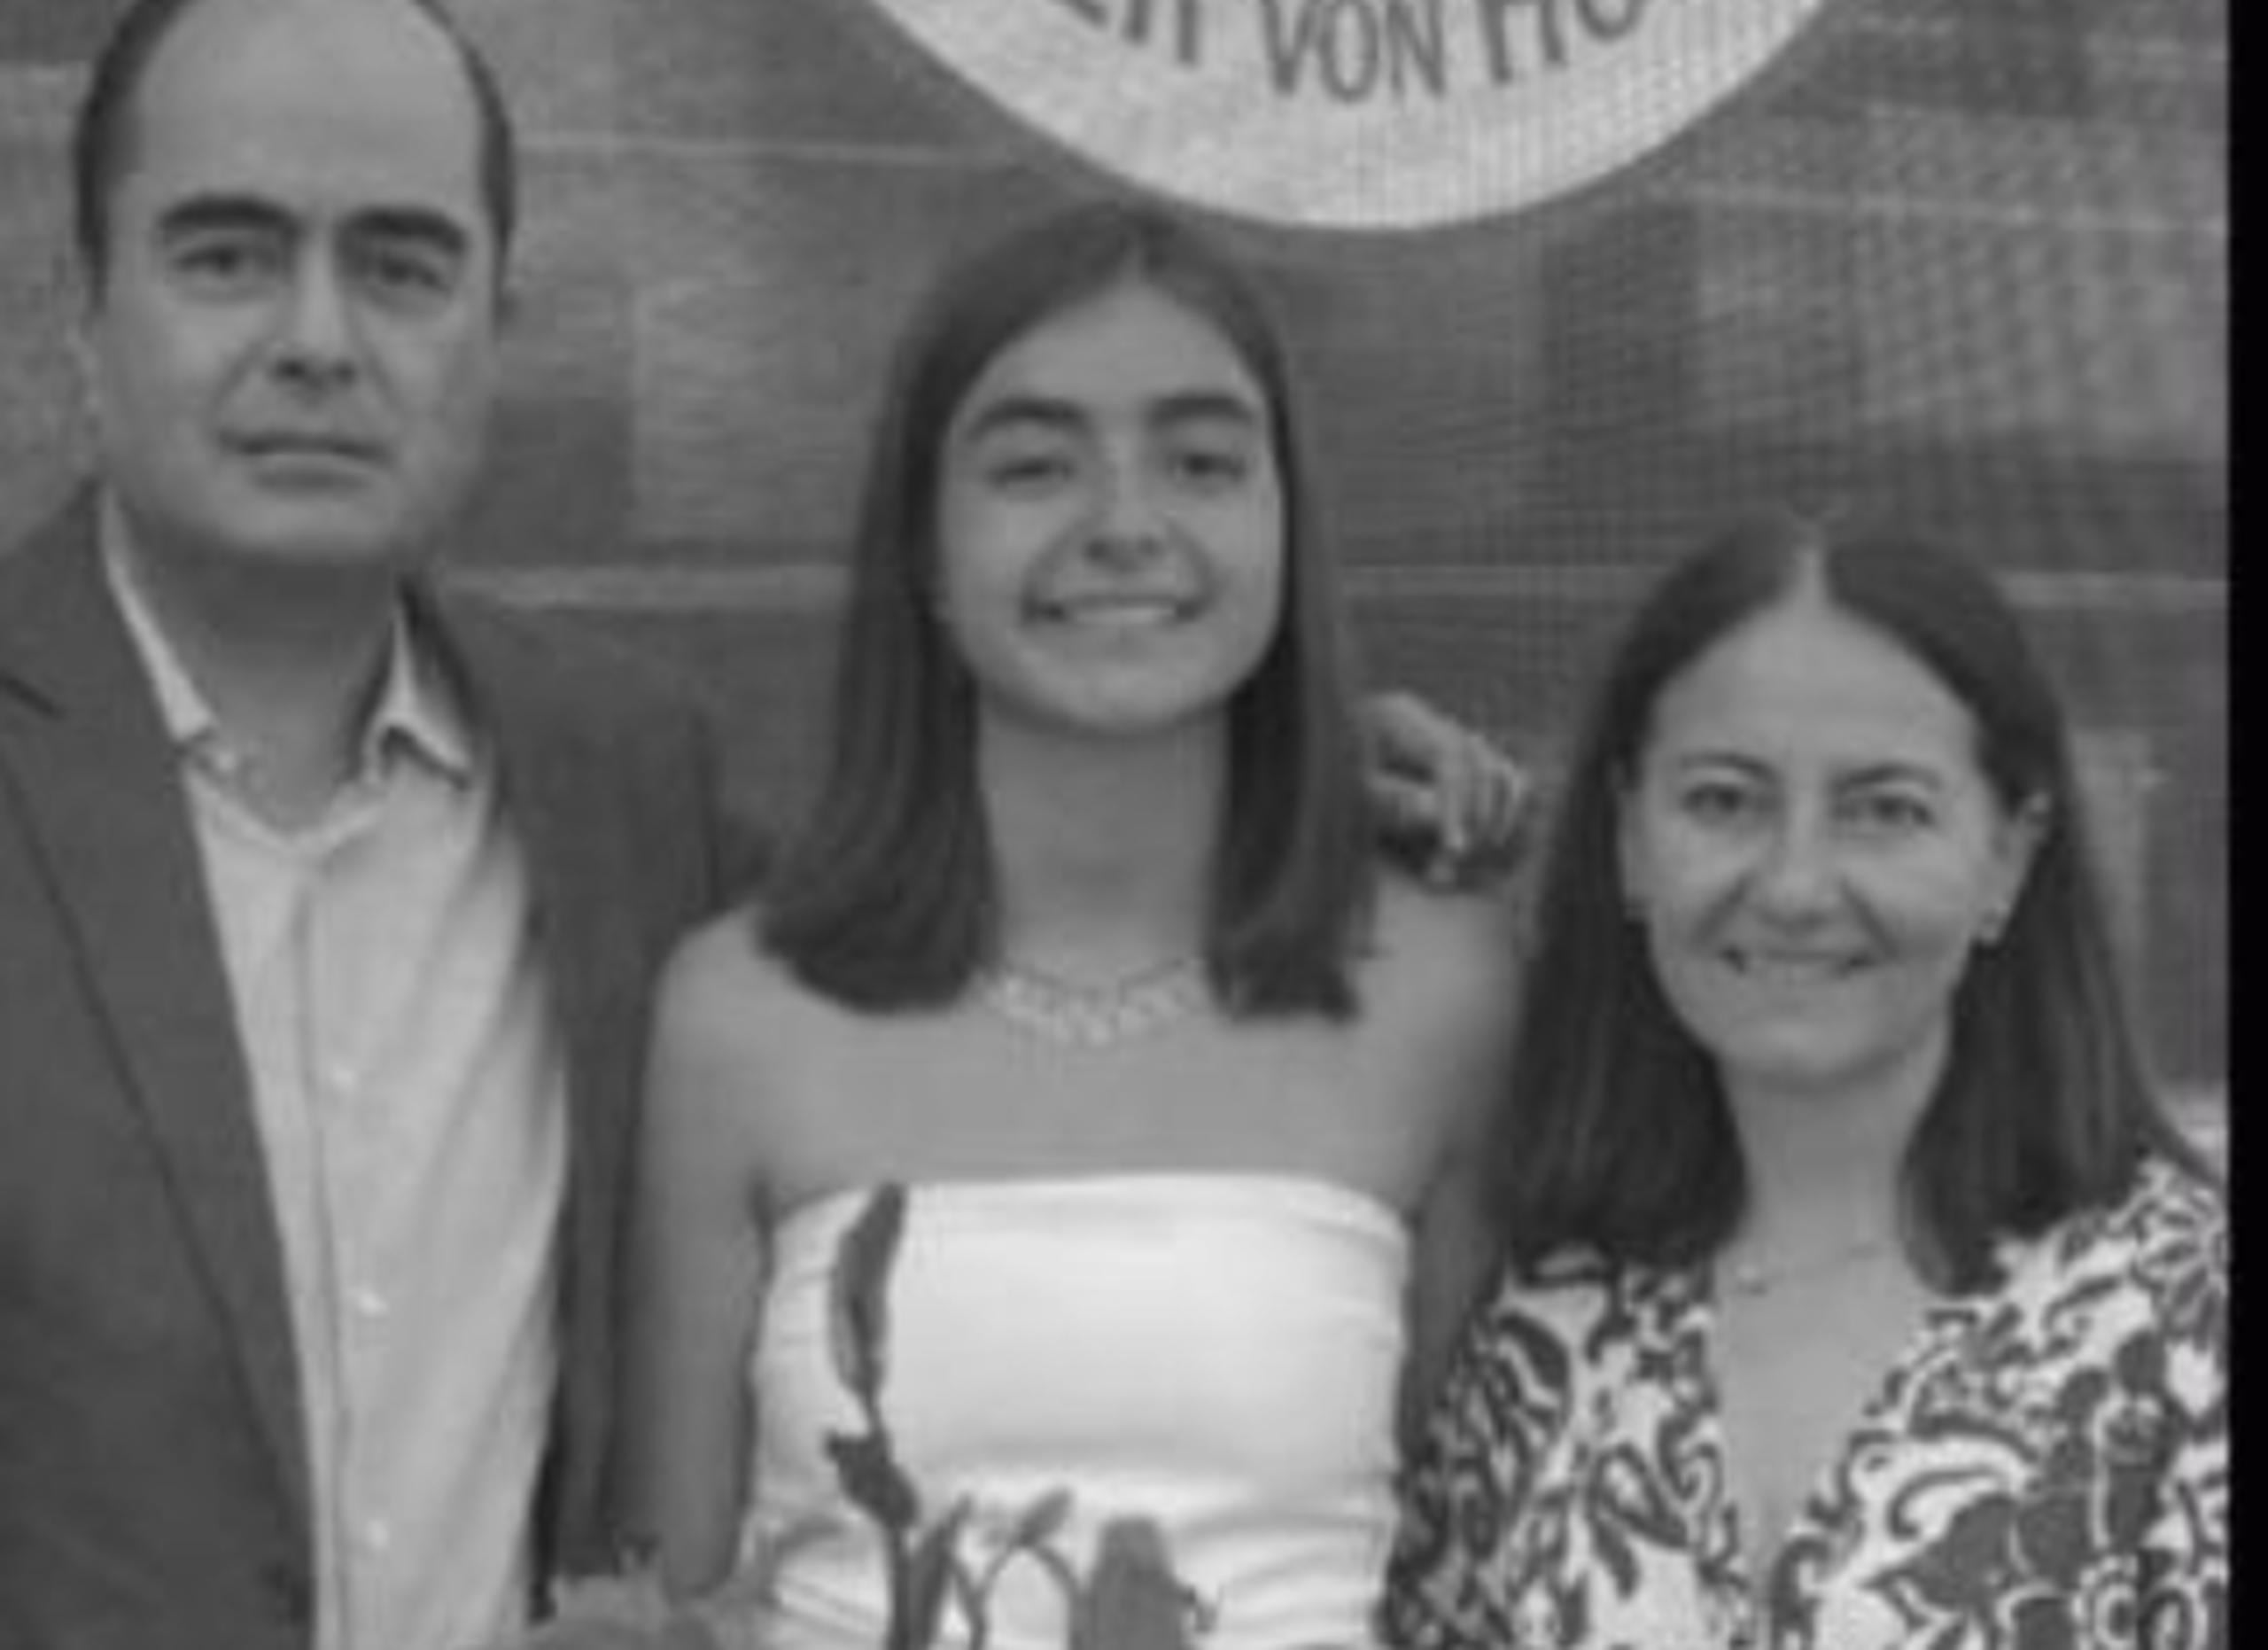 Al centro, Ana María Serrano en una fotografía junto a sus padres (Redes sociales)